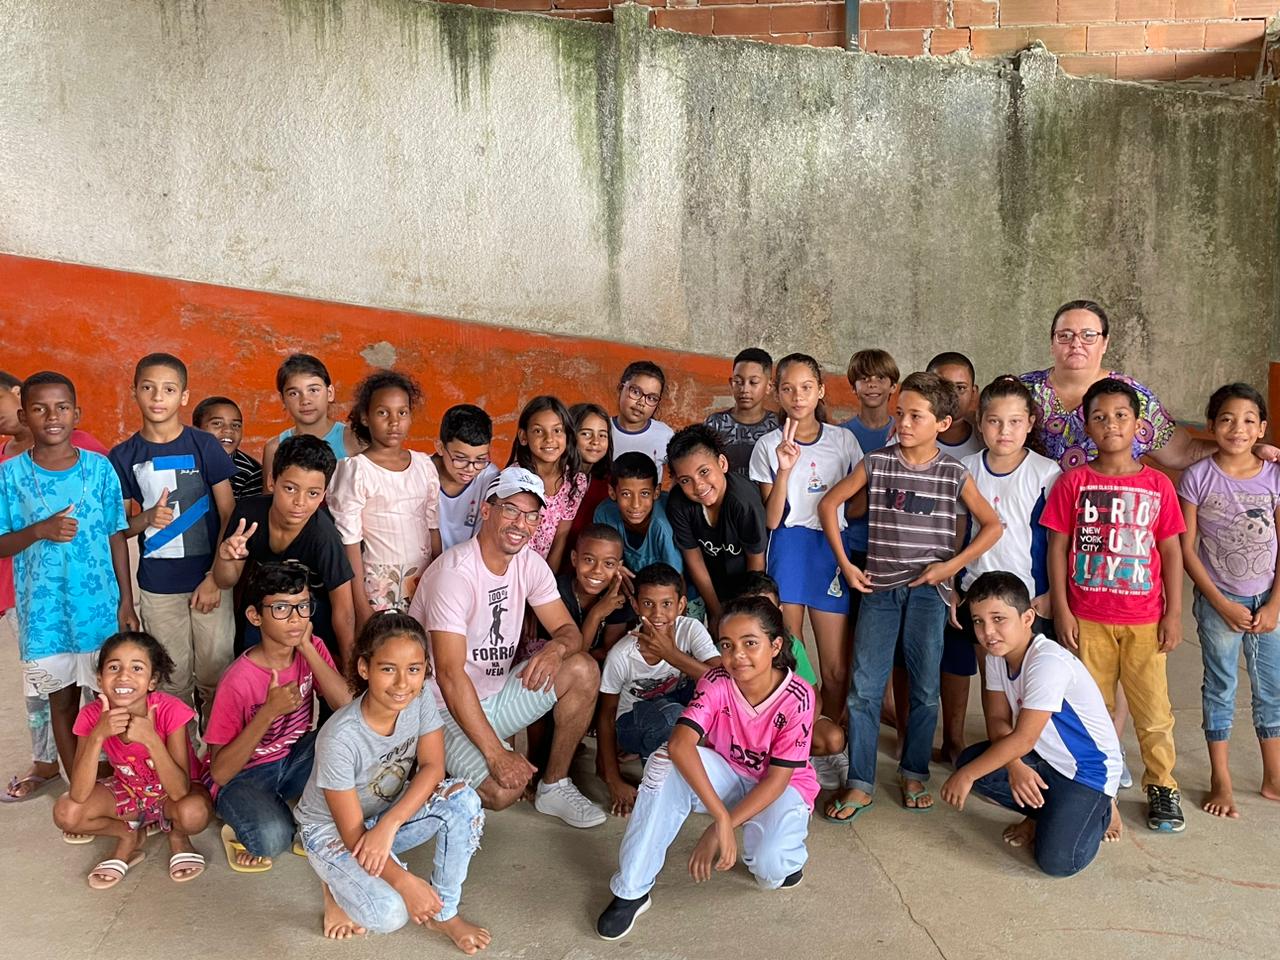 Dançarino da Secultur, Alex Soares visita escola no bairro Colina e ensina movimentos às crianças